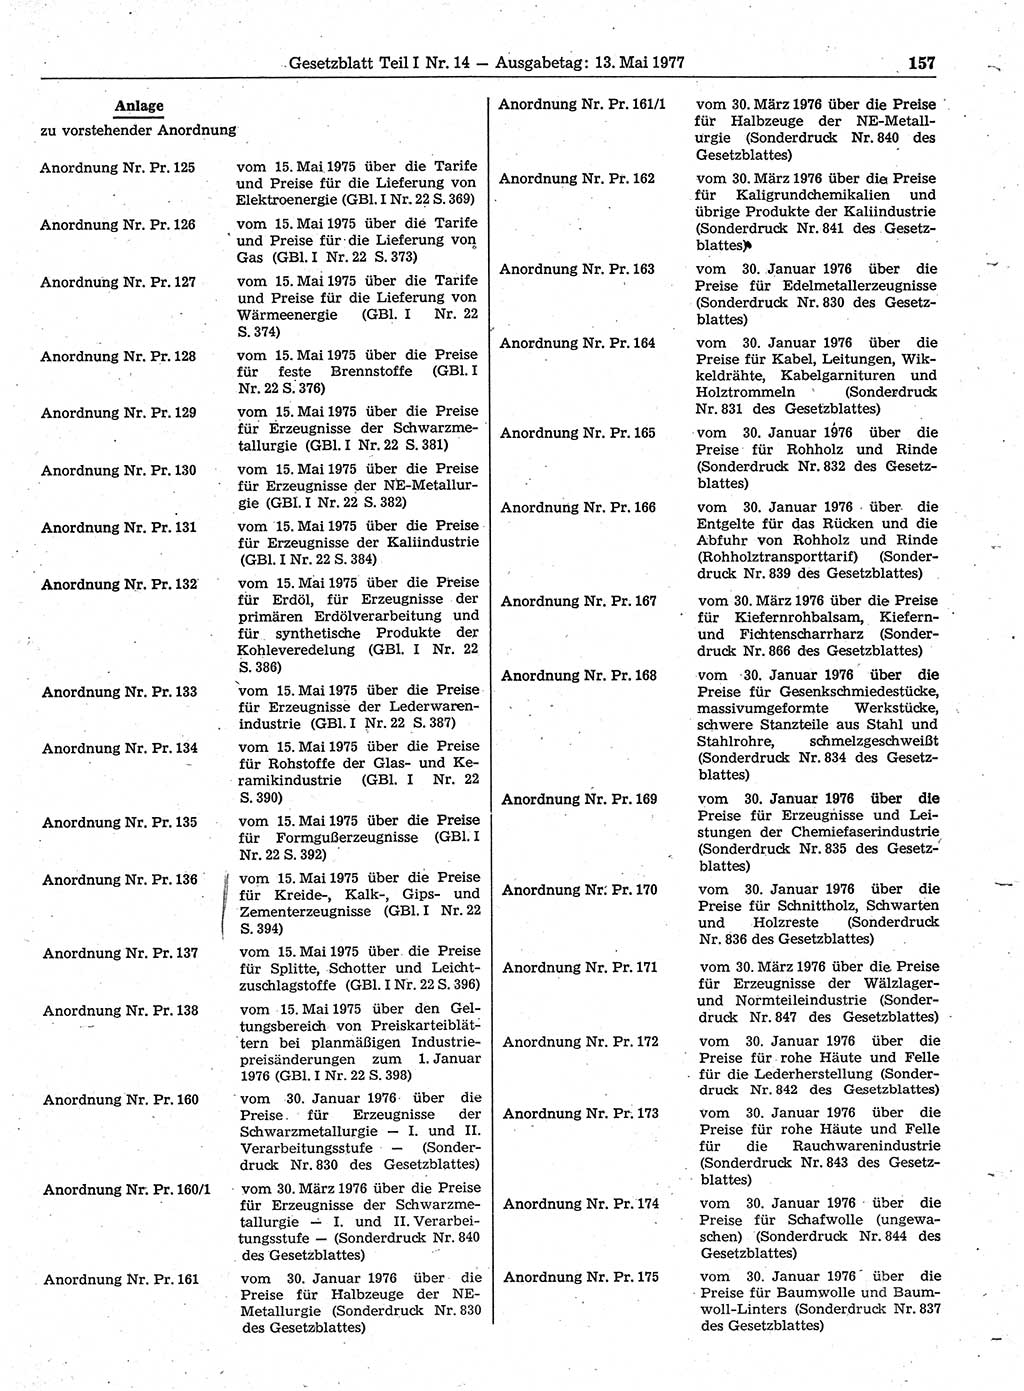 Gesetzblatt (GBl.) der Deutschen Demokratischen Republik (DDR) Teil Ⅰ 1977, Seite 157 (GBl. DDR Ⅰ 1977, S. 157)